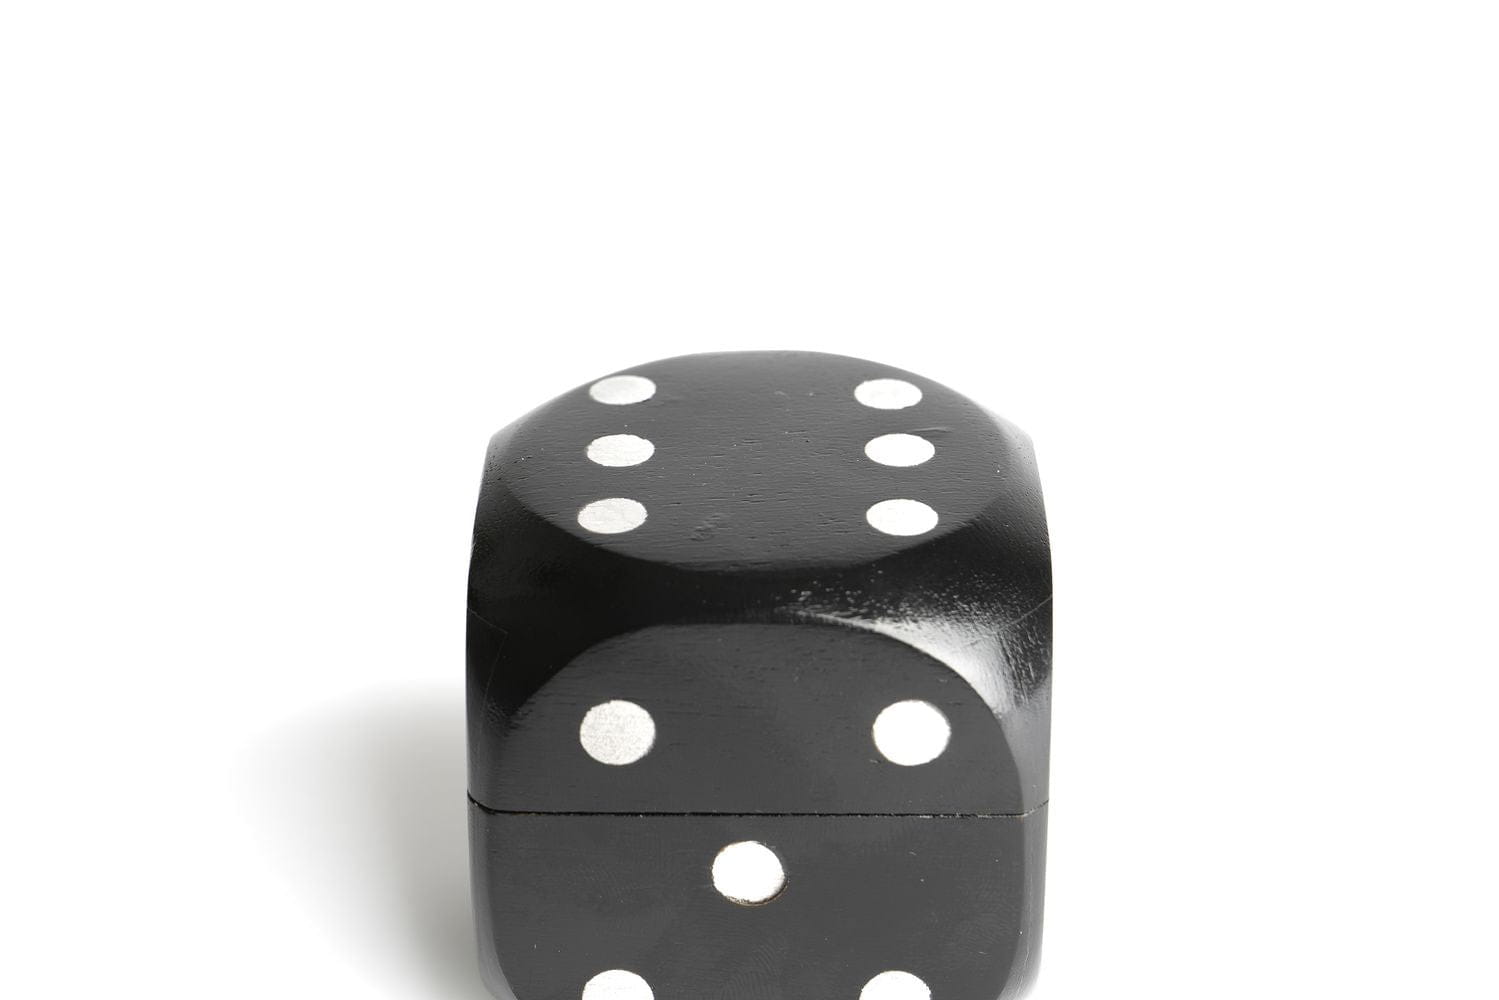 Autentické modely Cube Box hodí kostky, černé